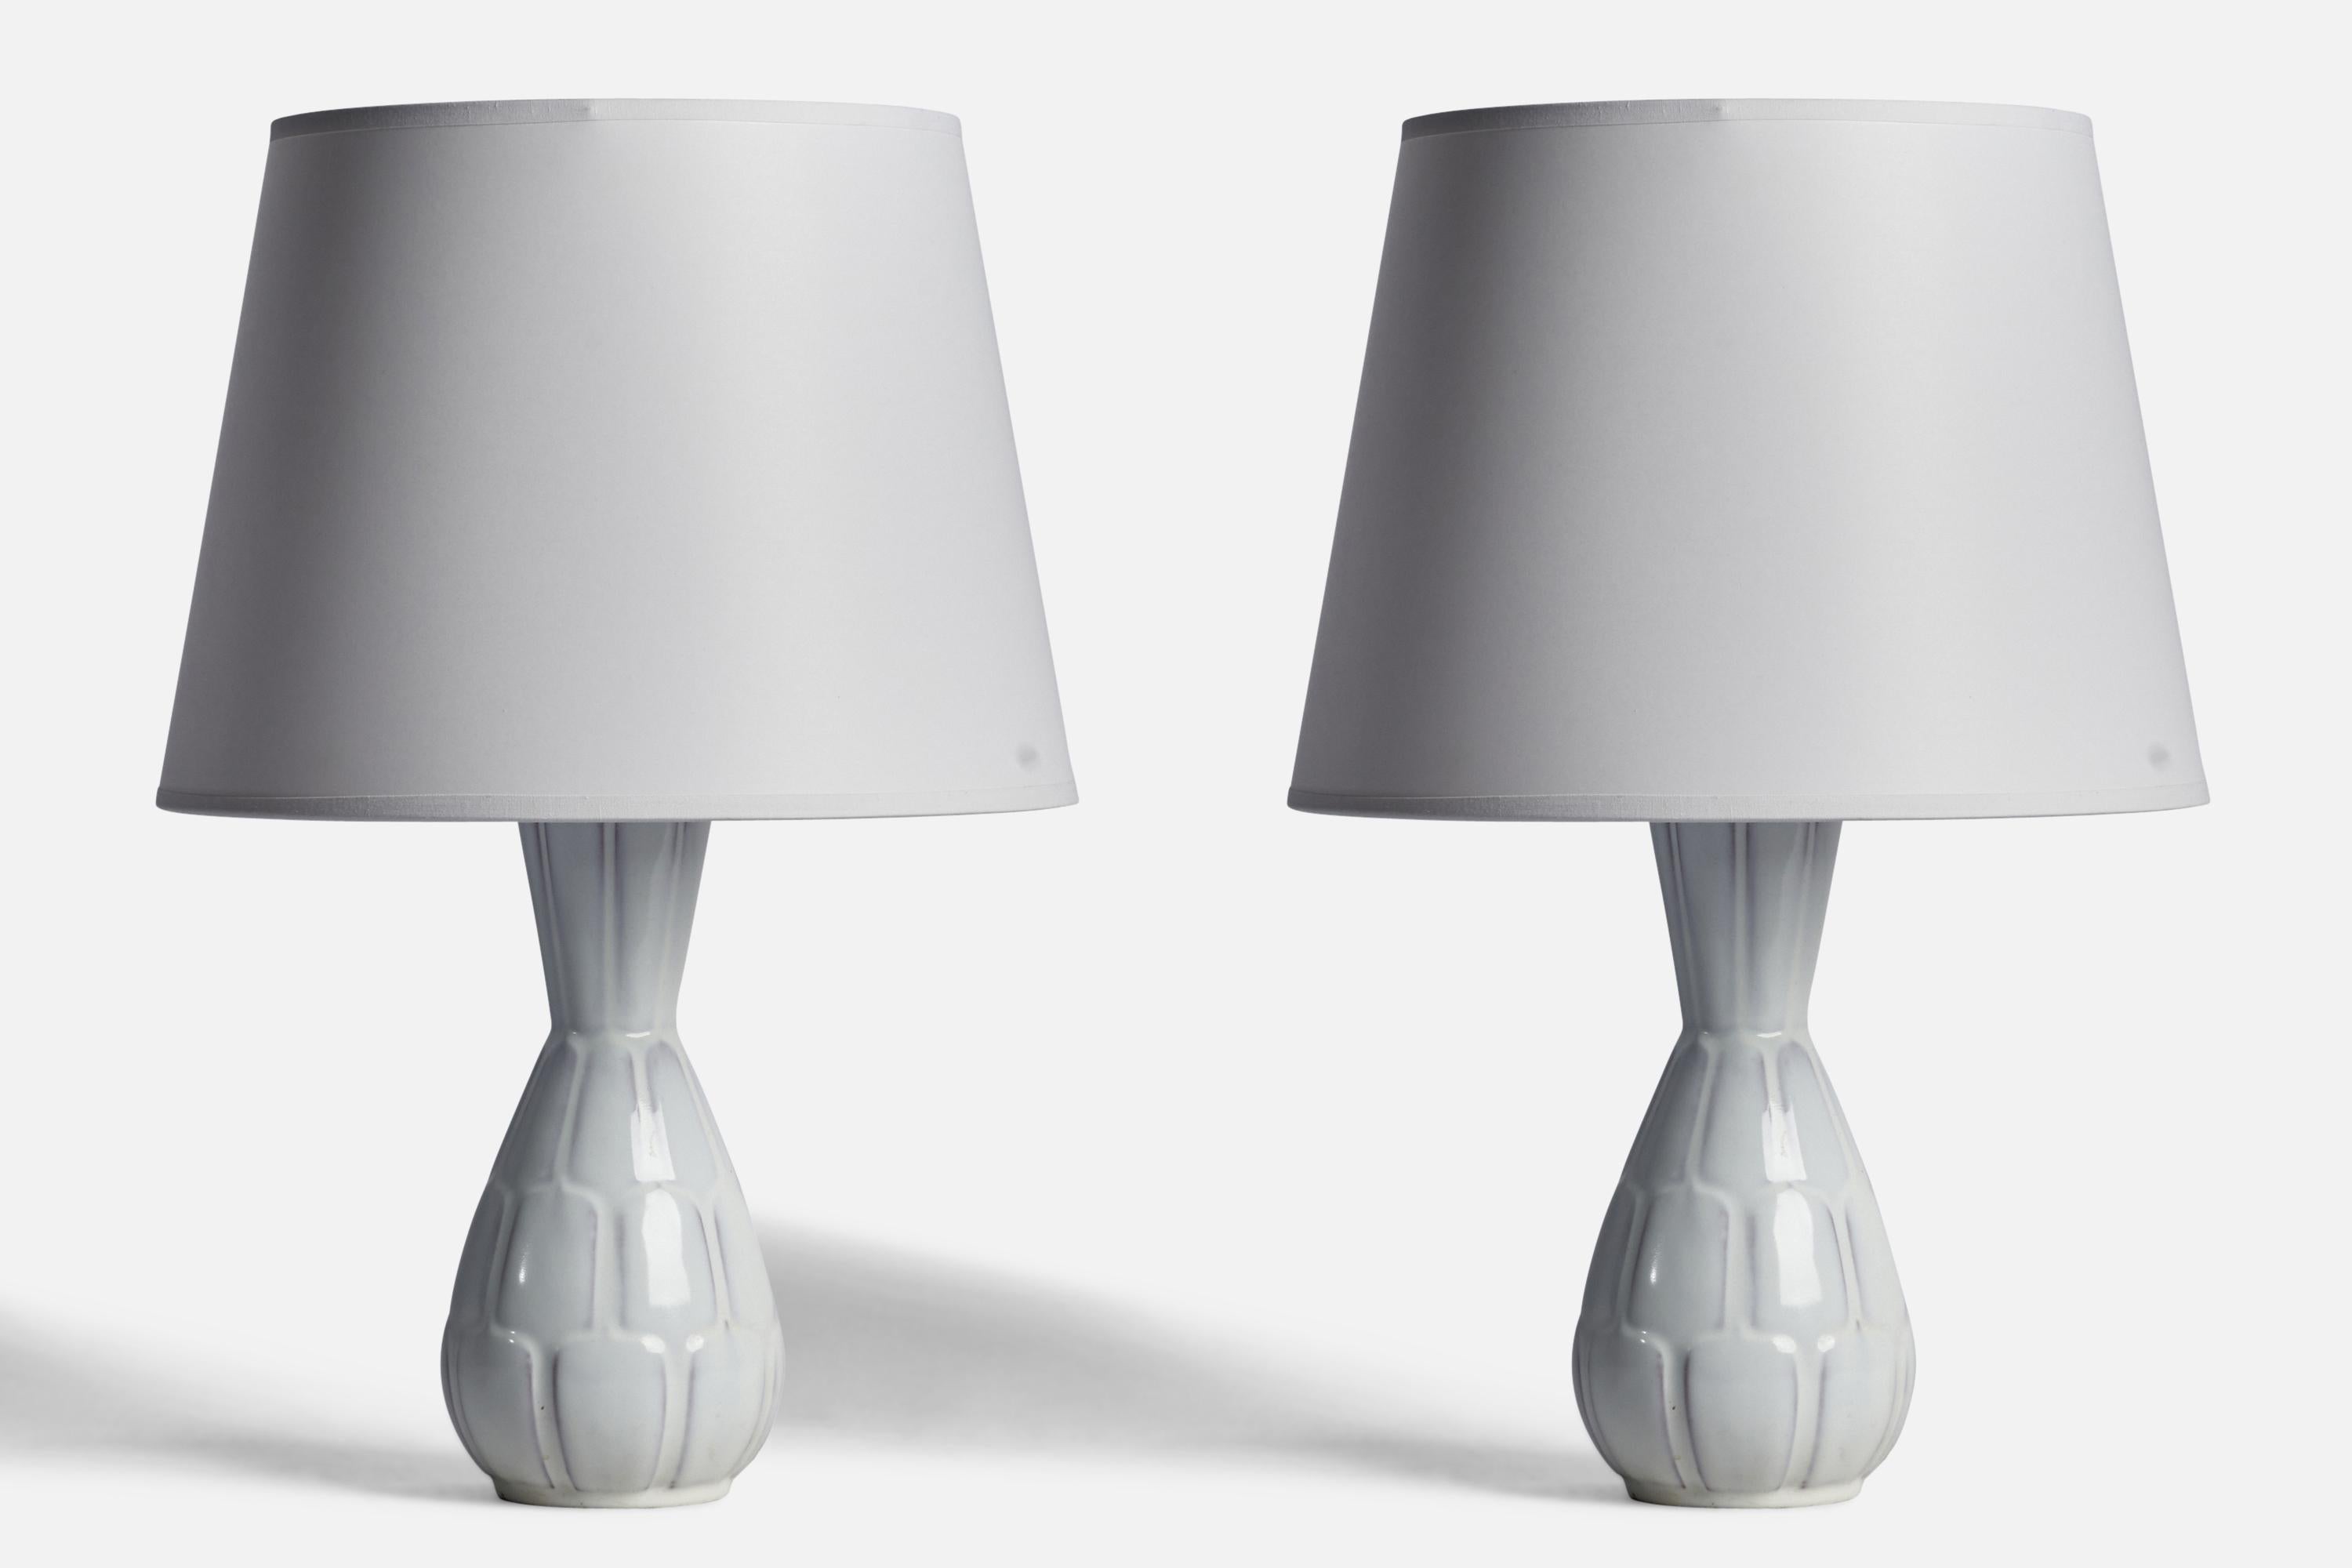 Paire de lampes de table en faïence à glaçure blanche conçues par Anna-Lisa Thomson et produites par Upsala Ekeby, Suède, années 1930.

Dimensions de la lampe (pouces) : 12